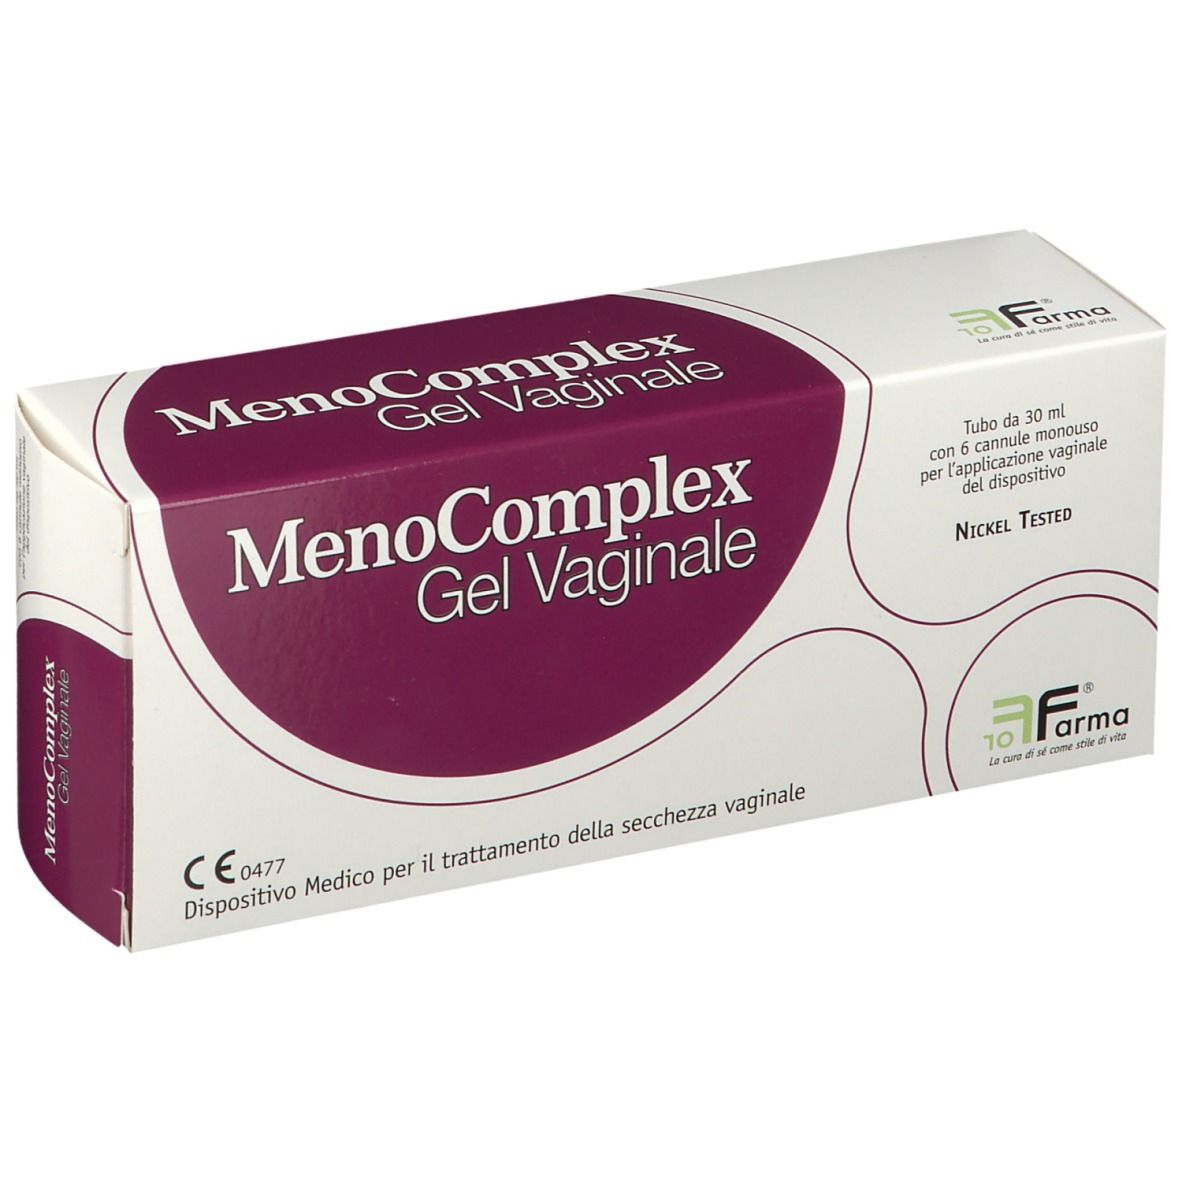 For Farma MenoComplex Gel